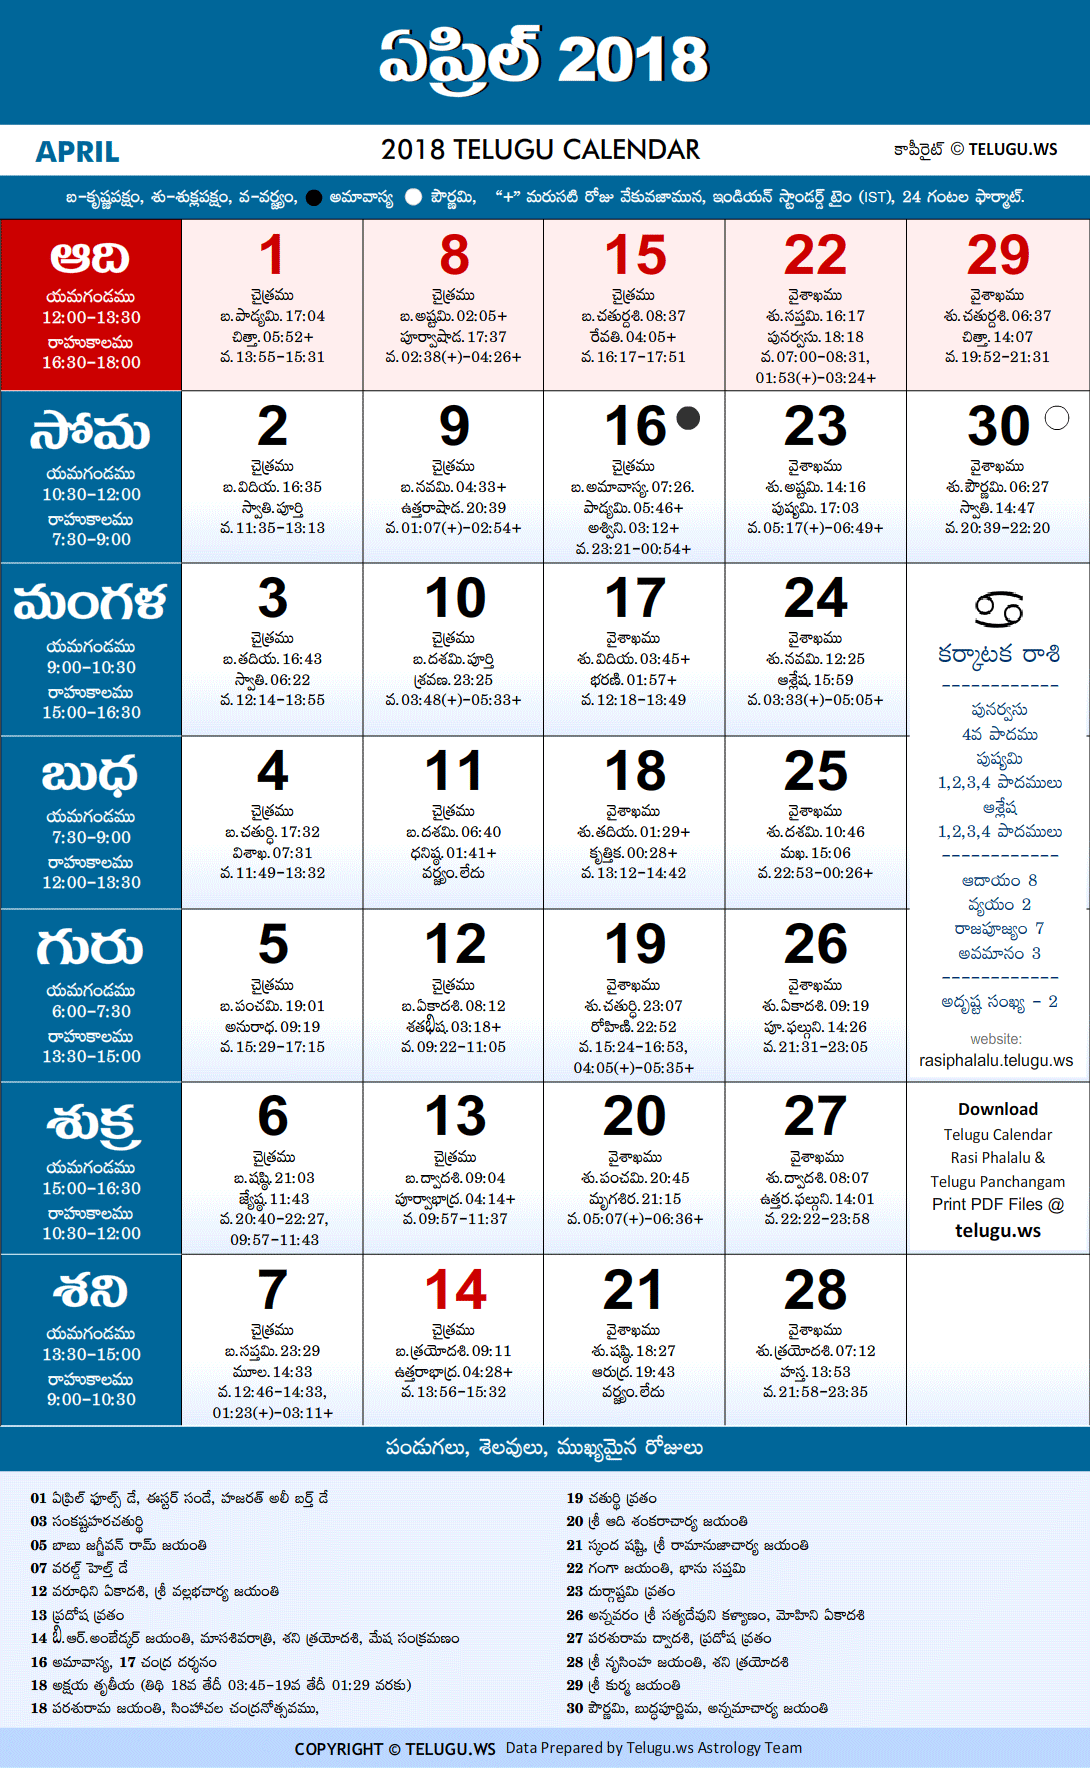 Telugu Calendar 2018 April Festivals and Holidays